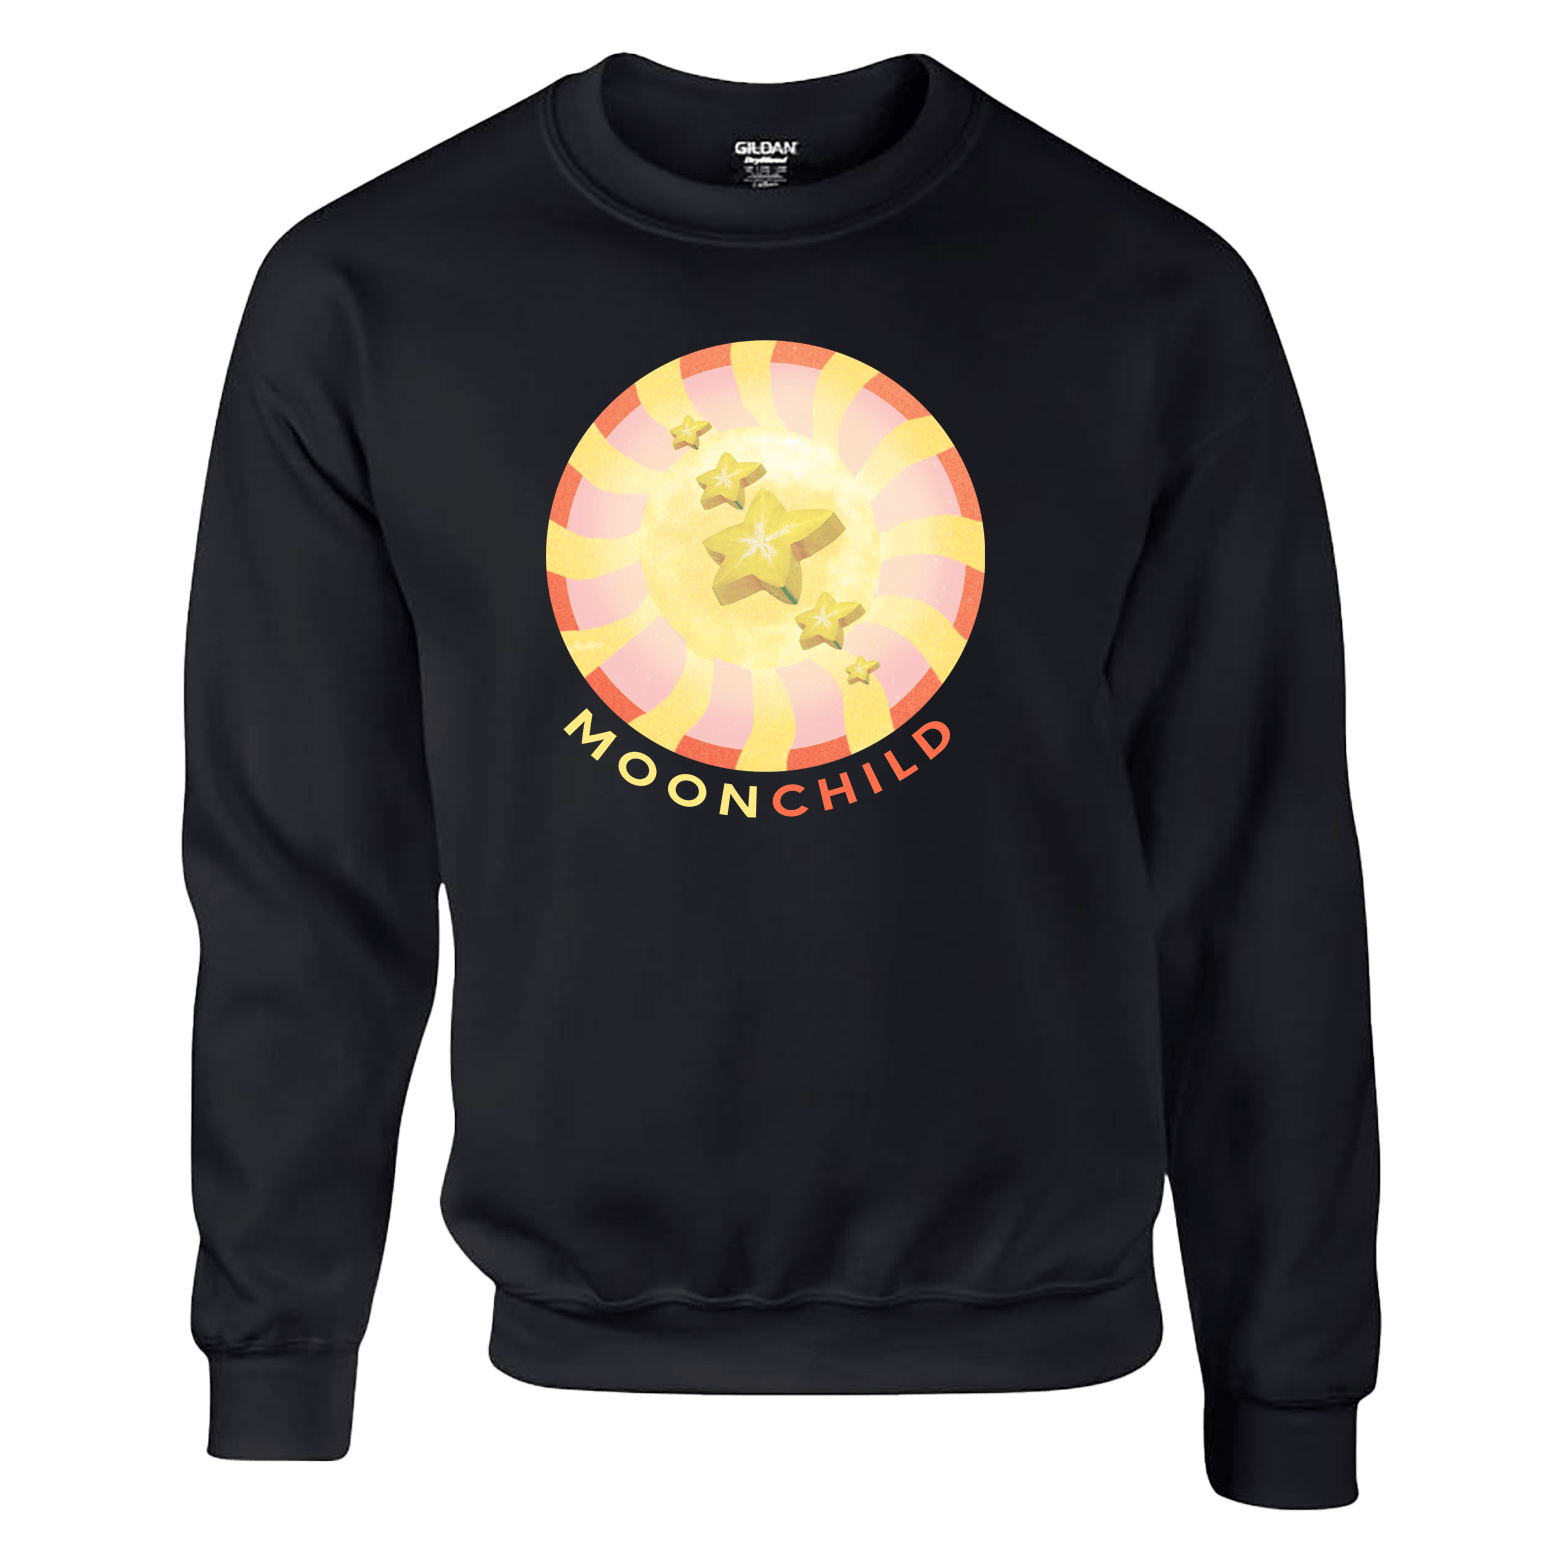 Moonchild - Starfruit Sweatshirt